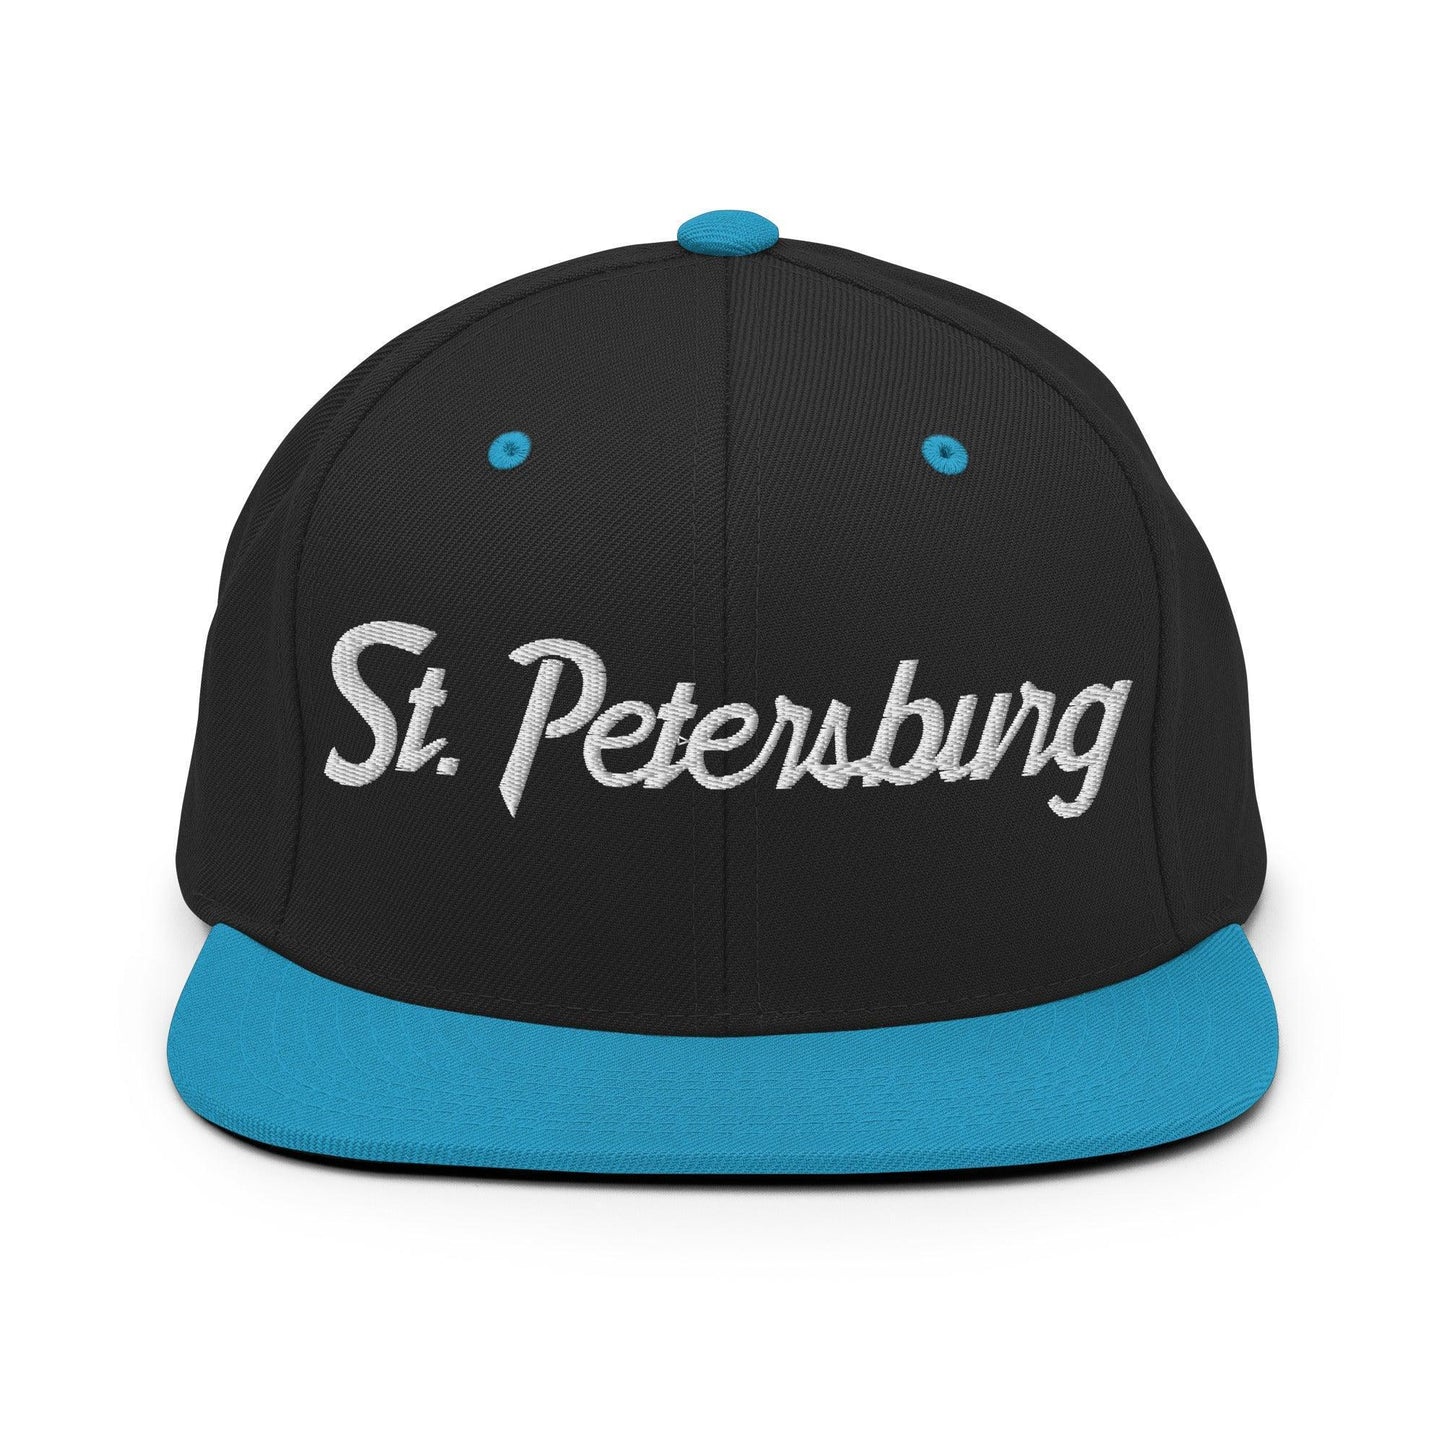 St. Petersburg Script Snapback Hat Black/ Teal